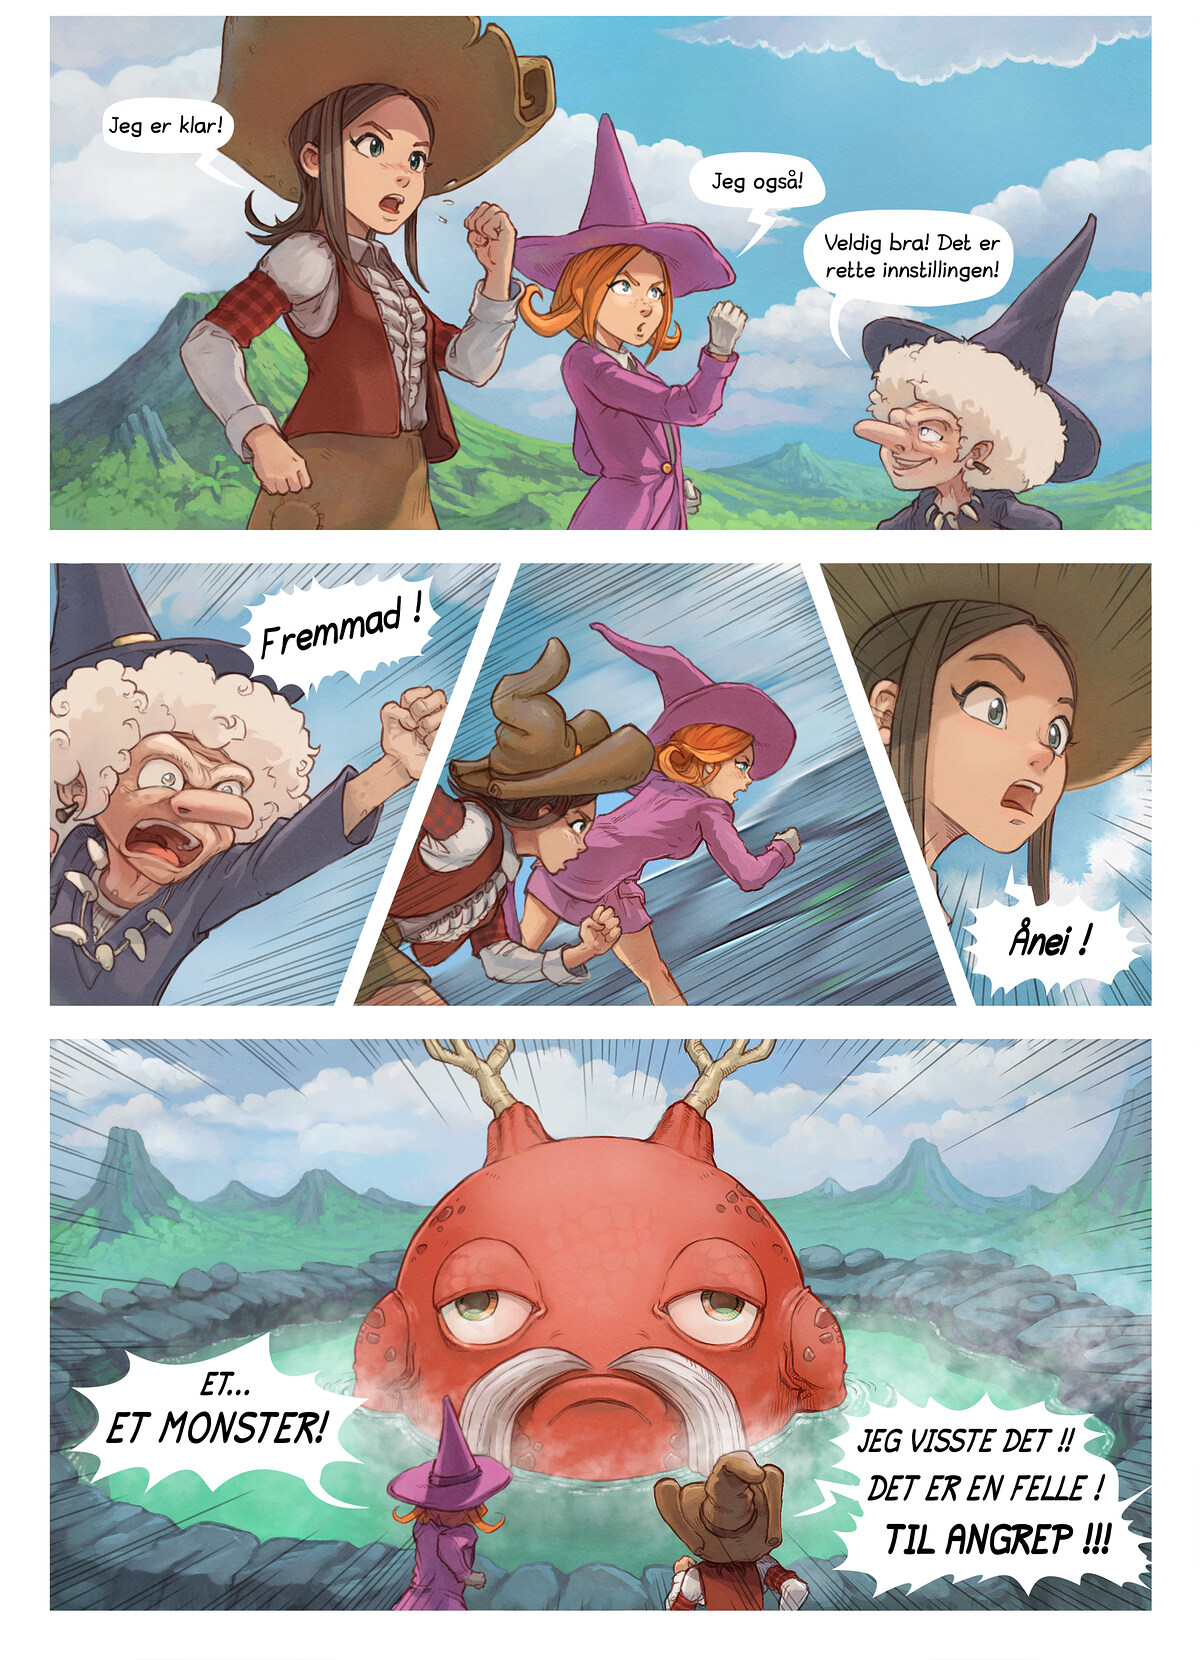 Episode 16: Vismannen p å fjellet, Page 5